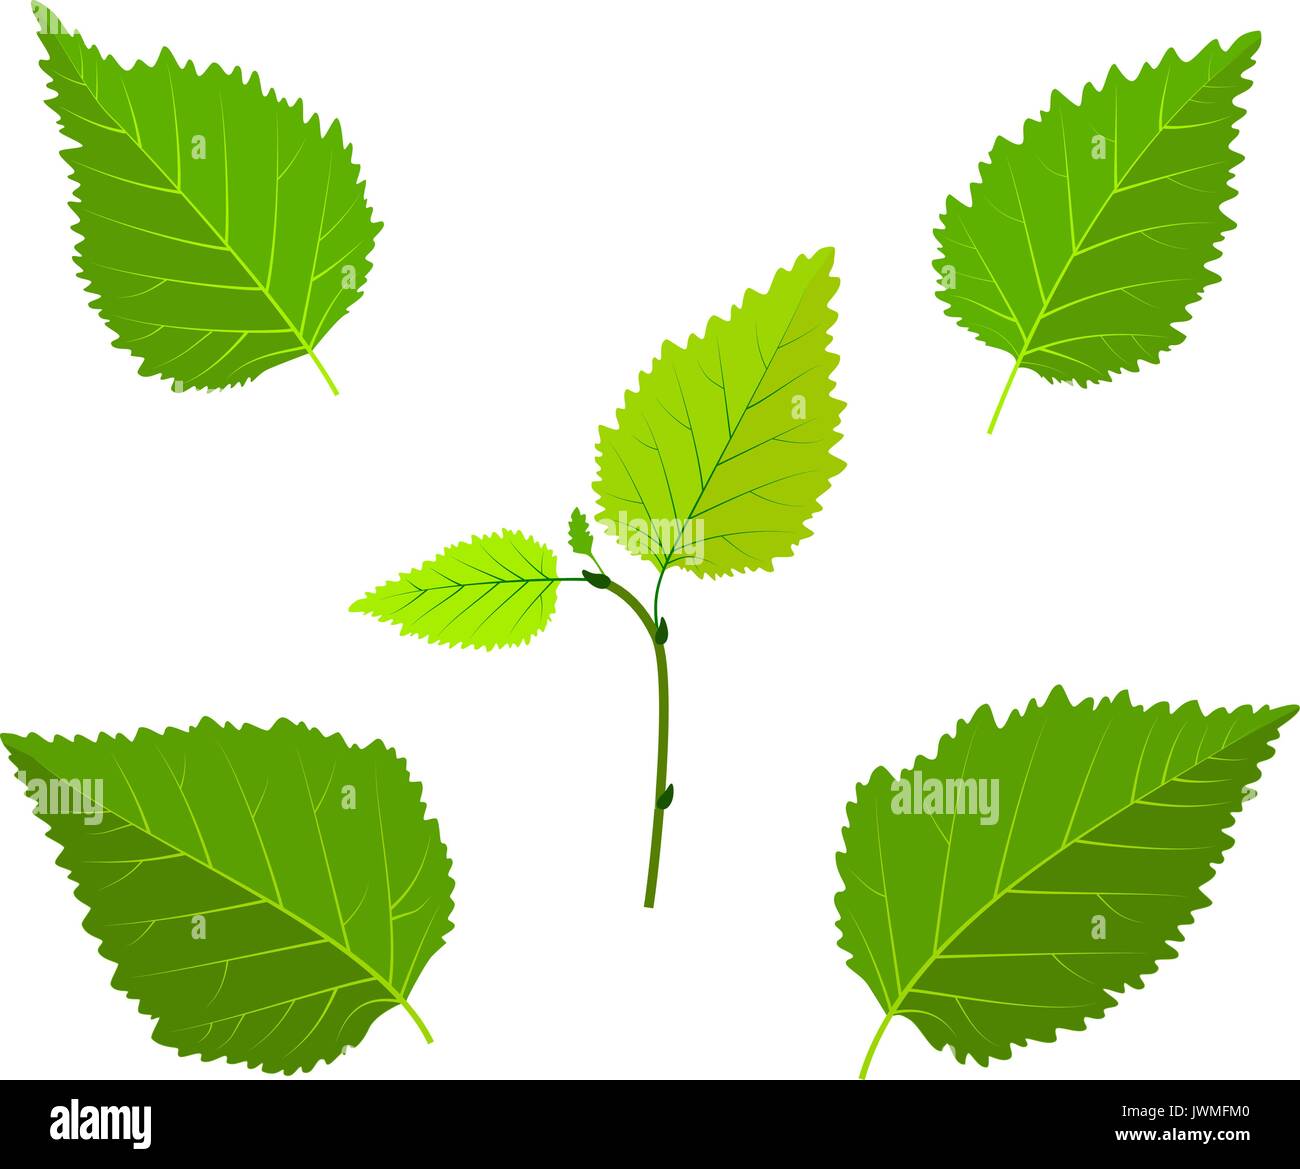 Betulla foglie verdi e il germoglio imposta illustrazione vettoriale Illustrazione Vettoriale